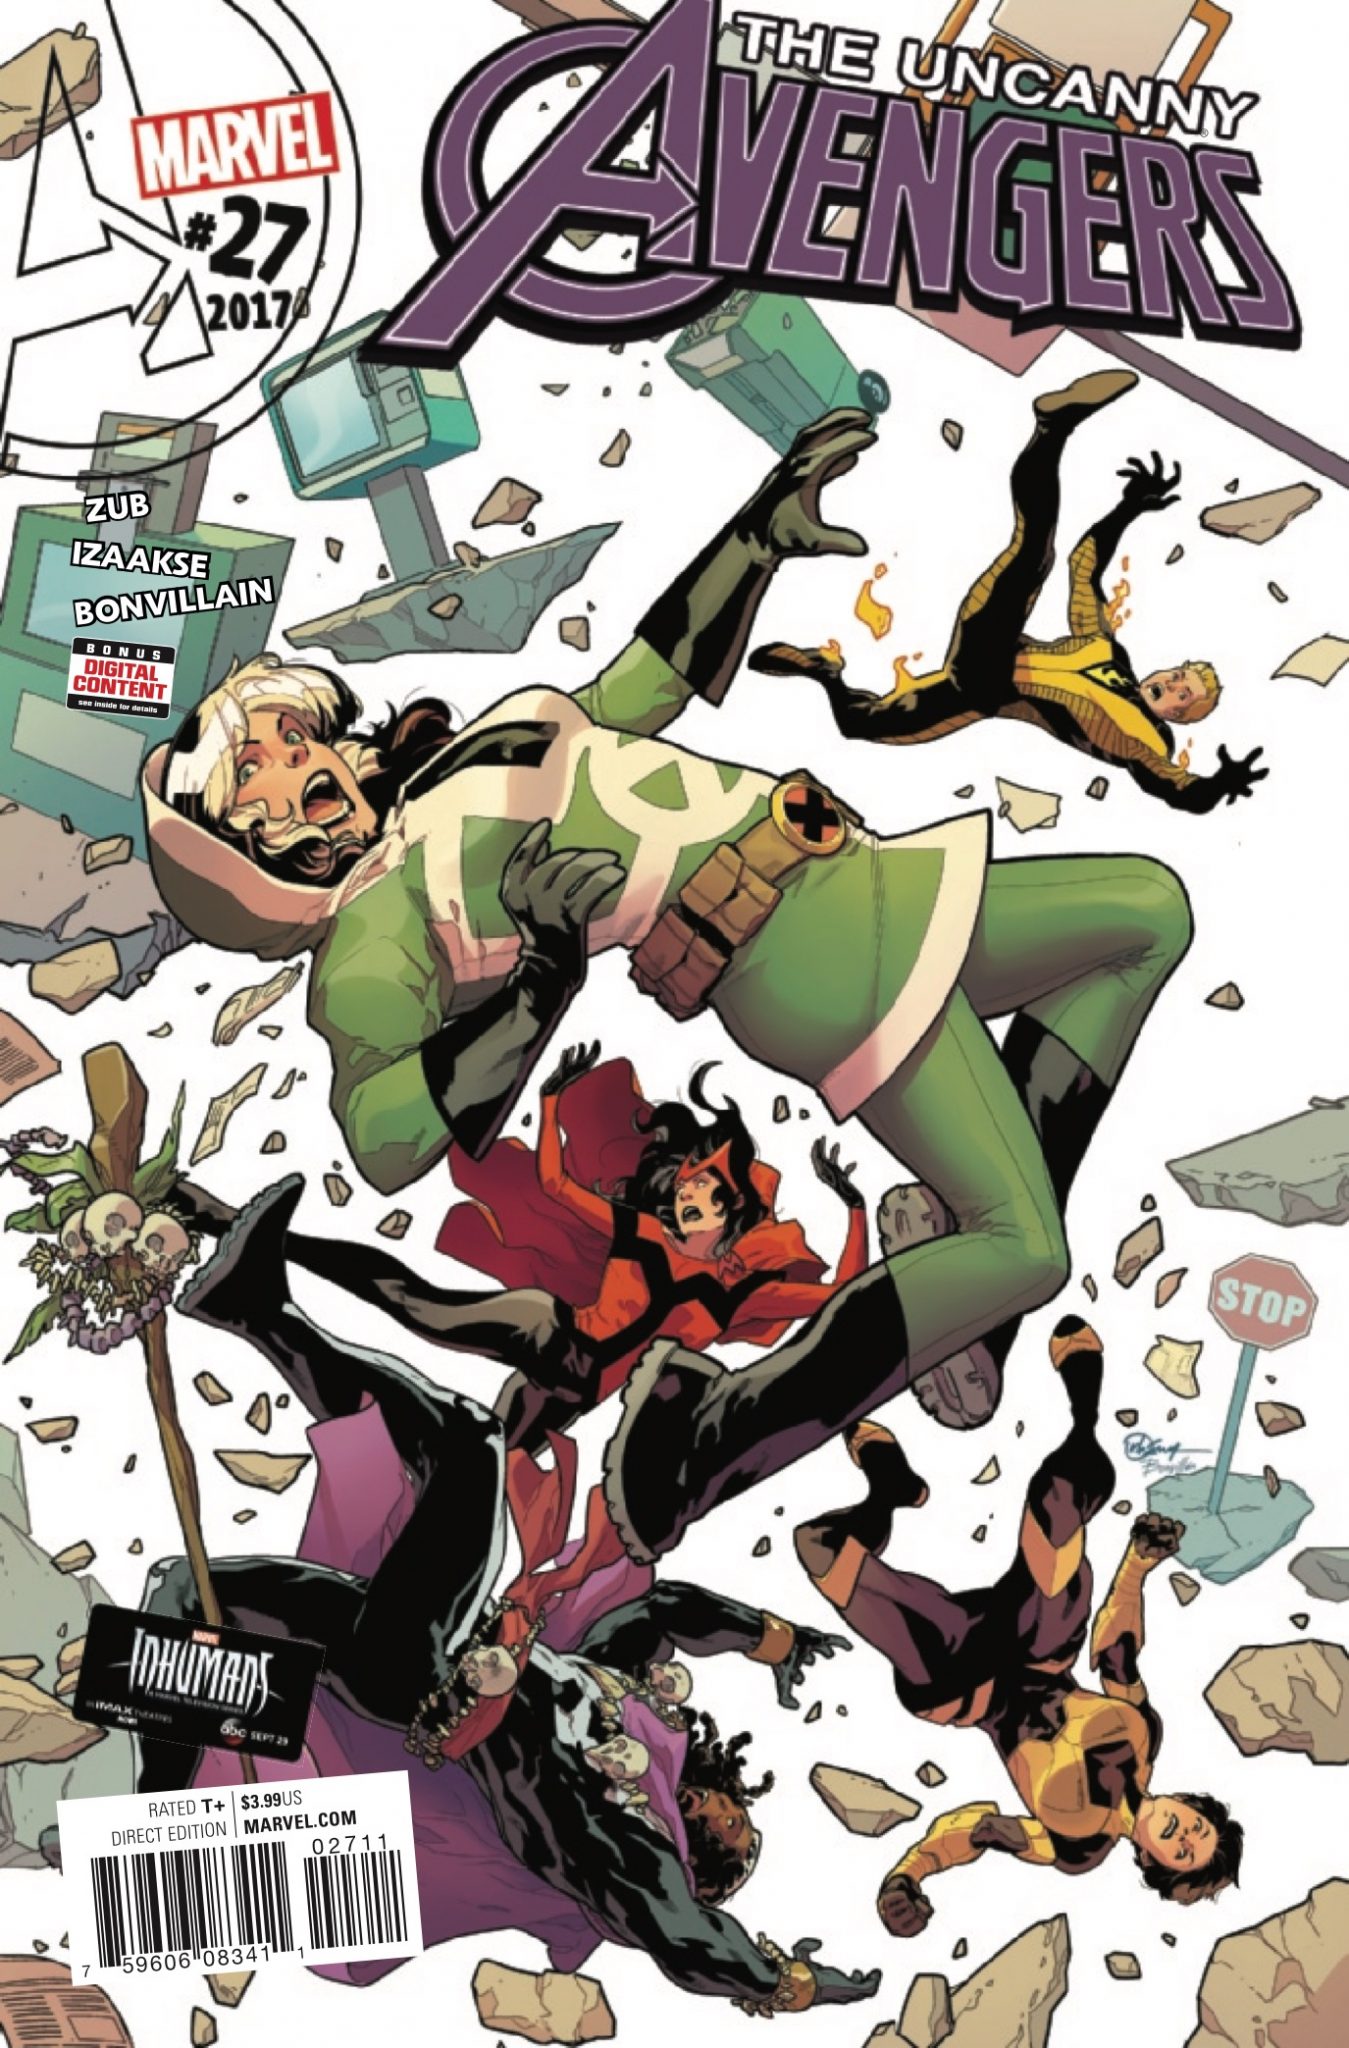 Uncanny Avengers #27 Review